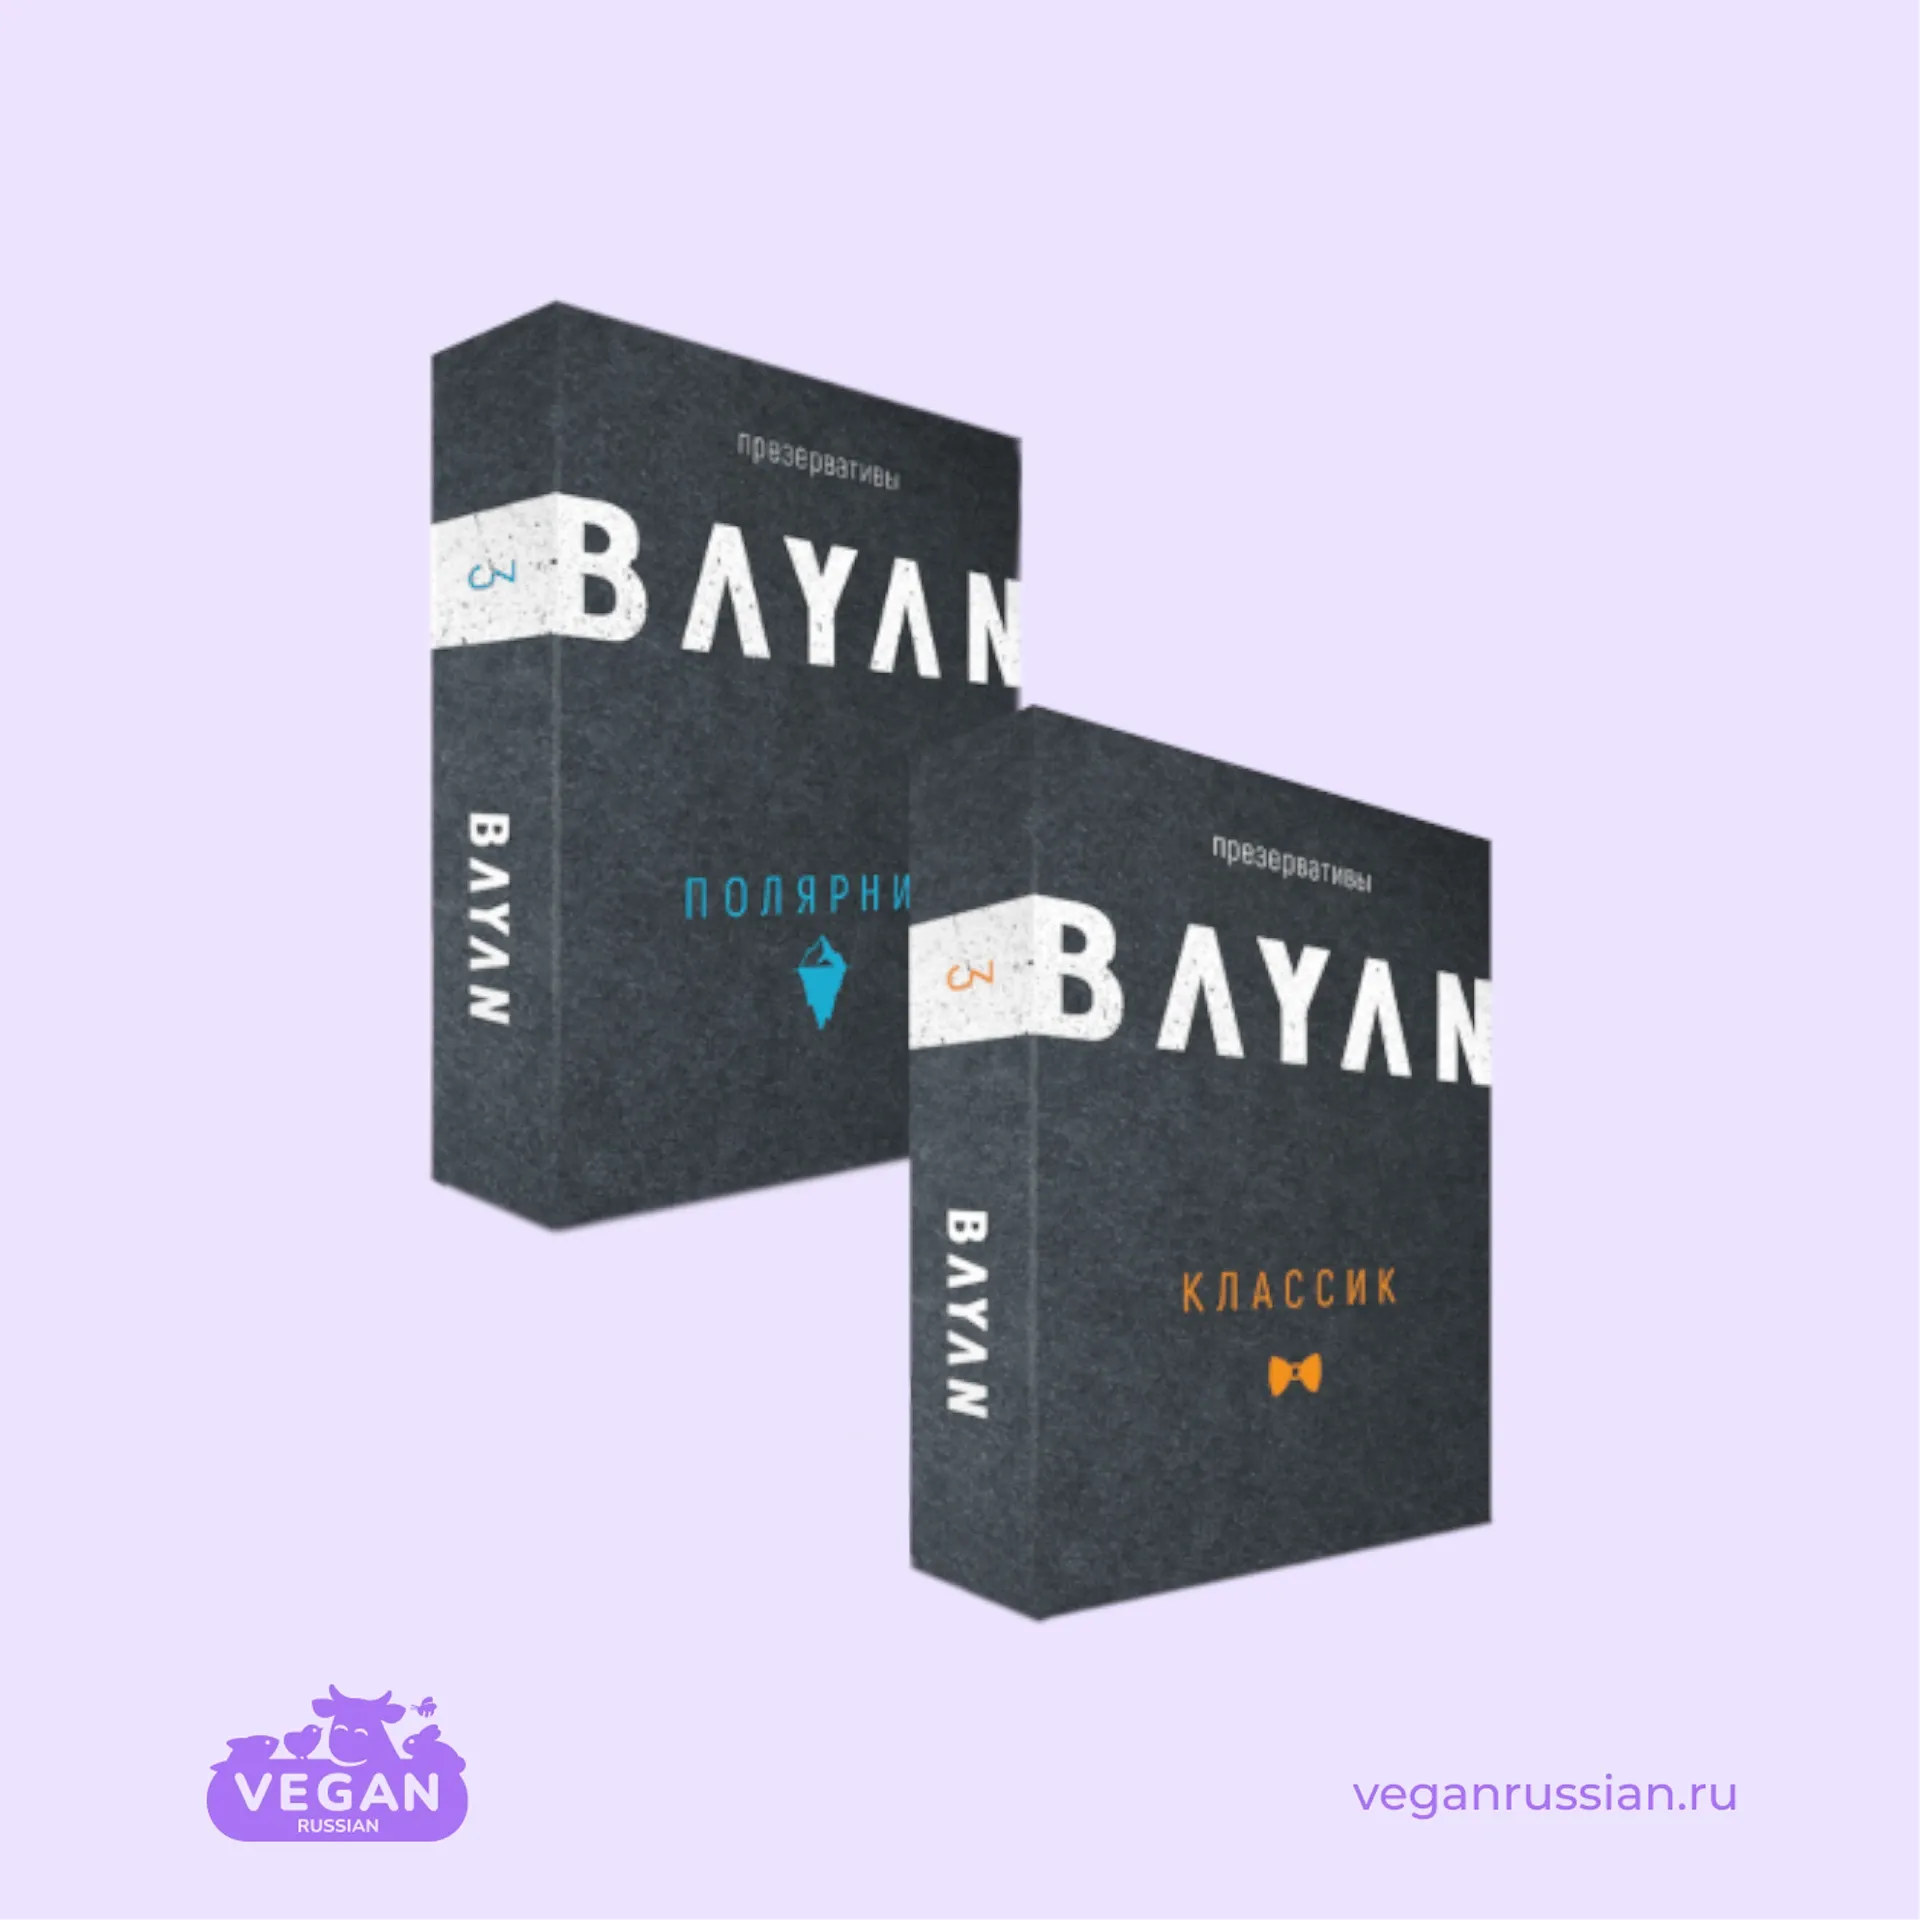 Презервативы Bayan (список)